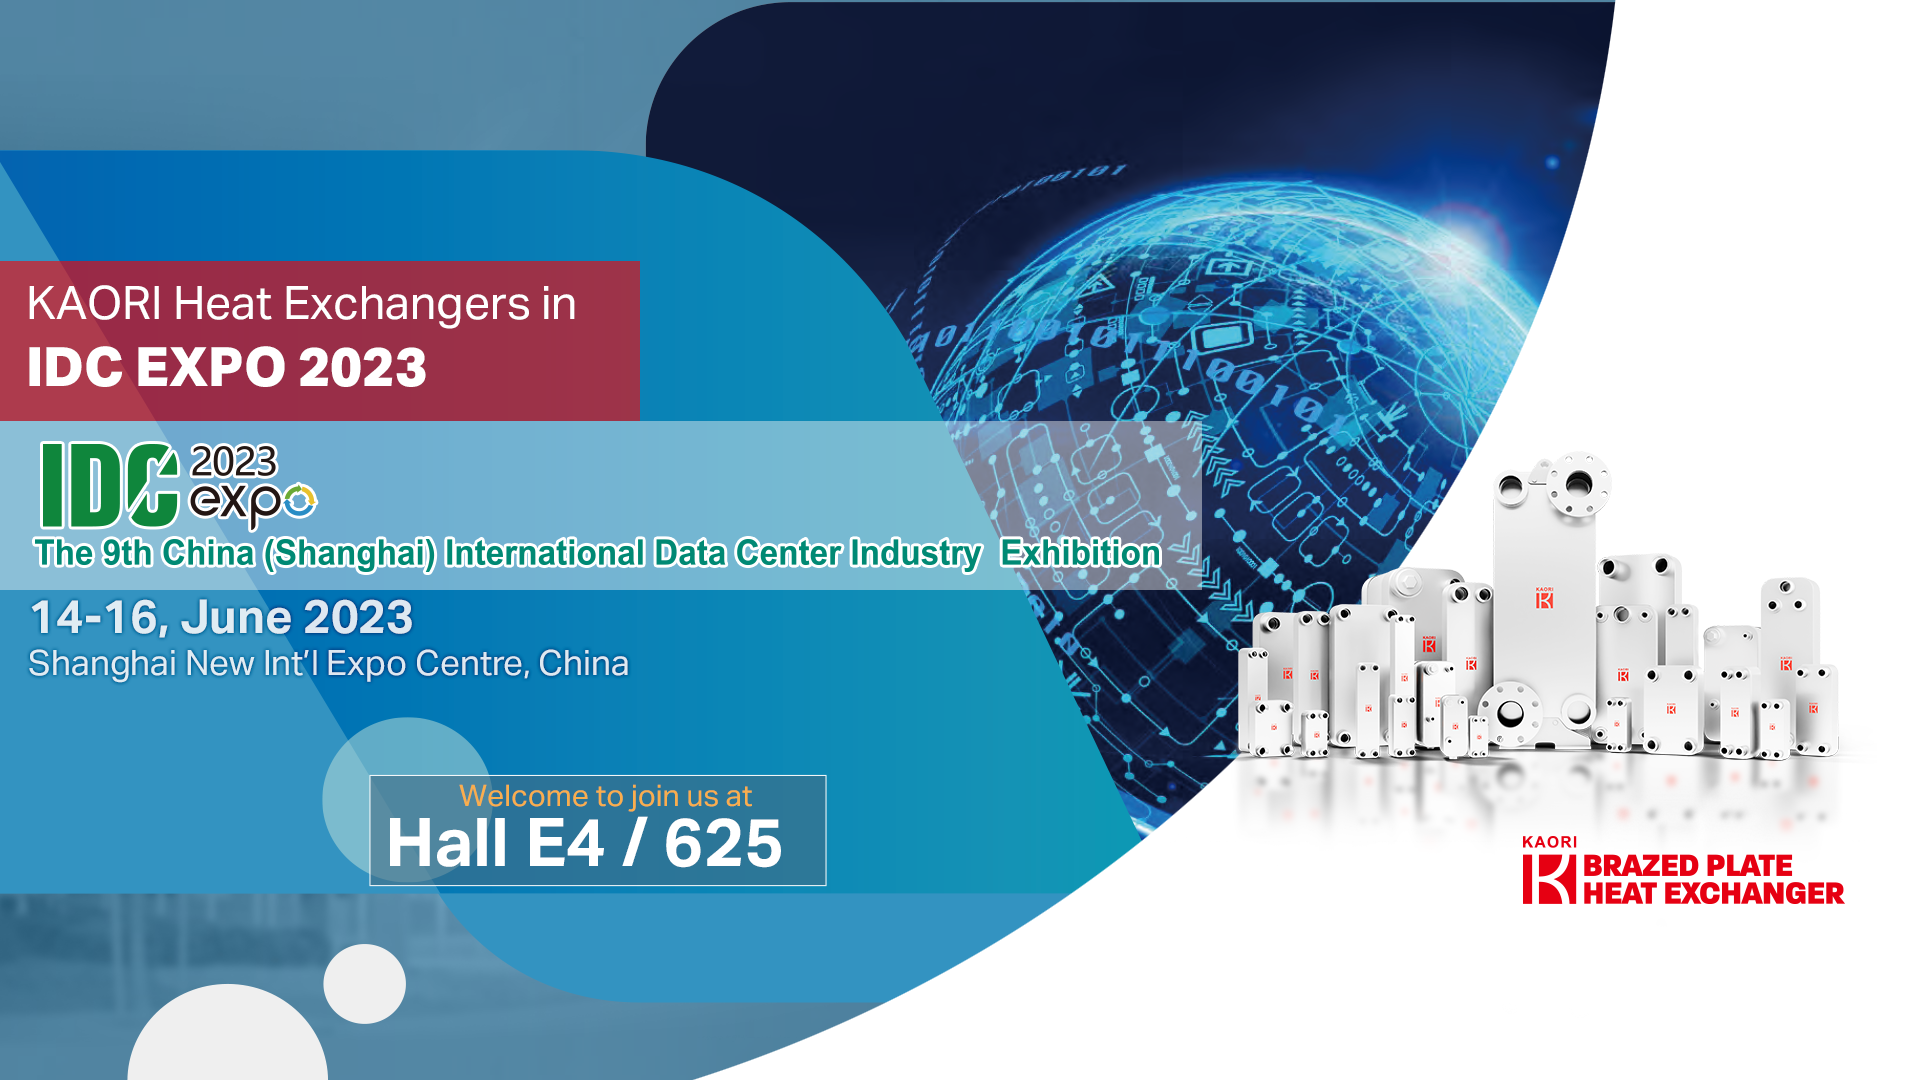  IDC EXPO 2023 • SHANGHAI, JUN 14-16 